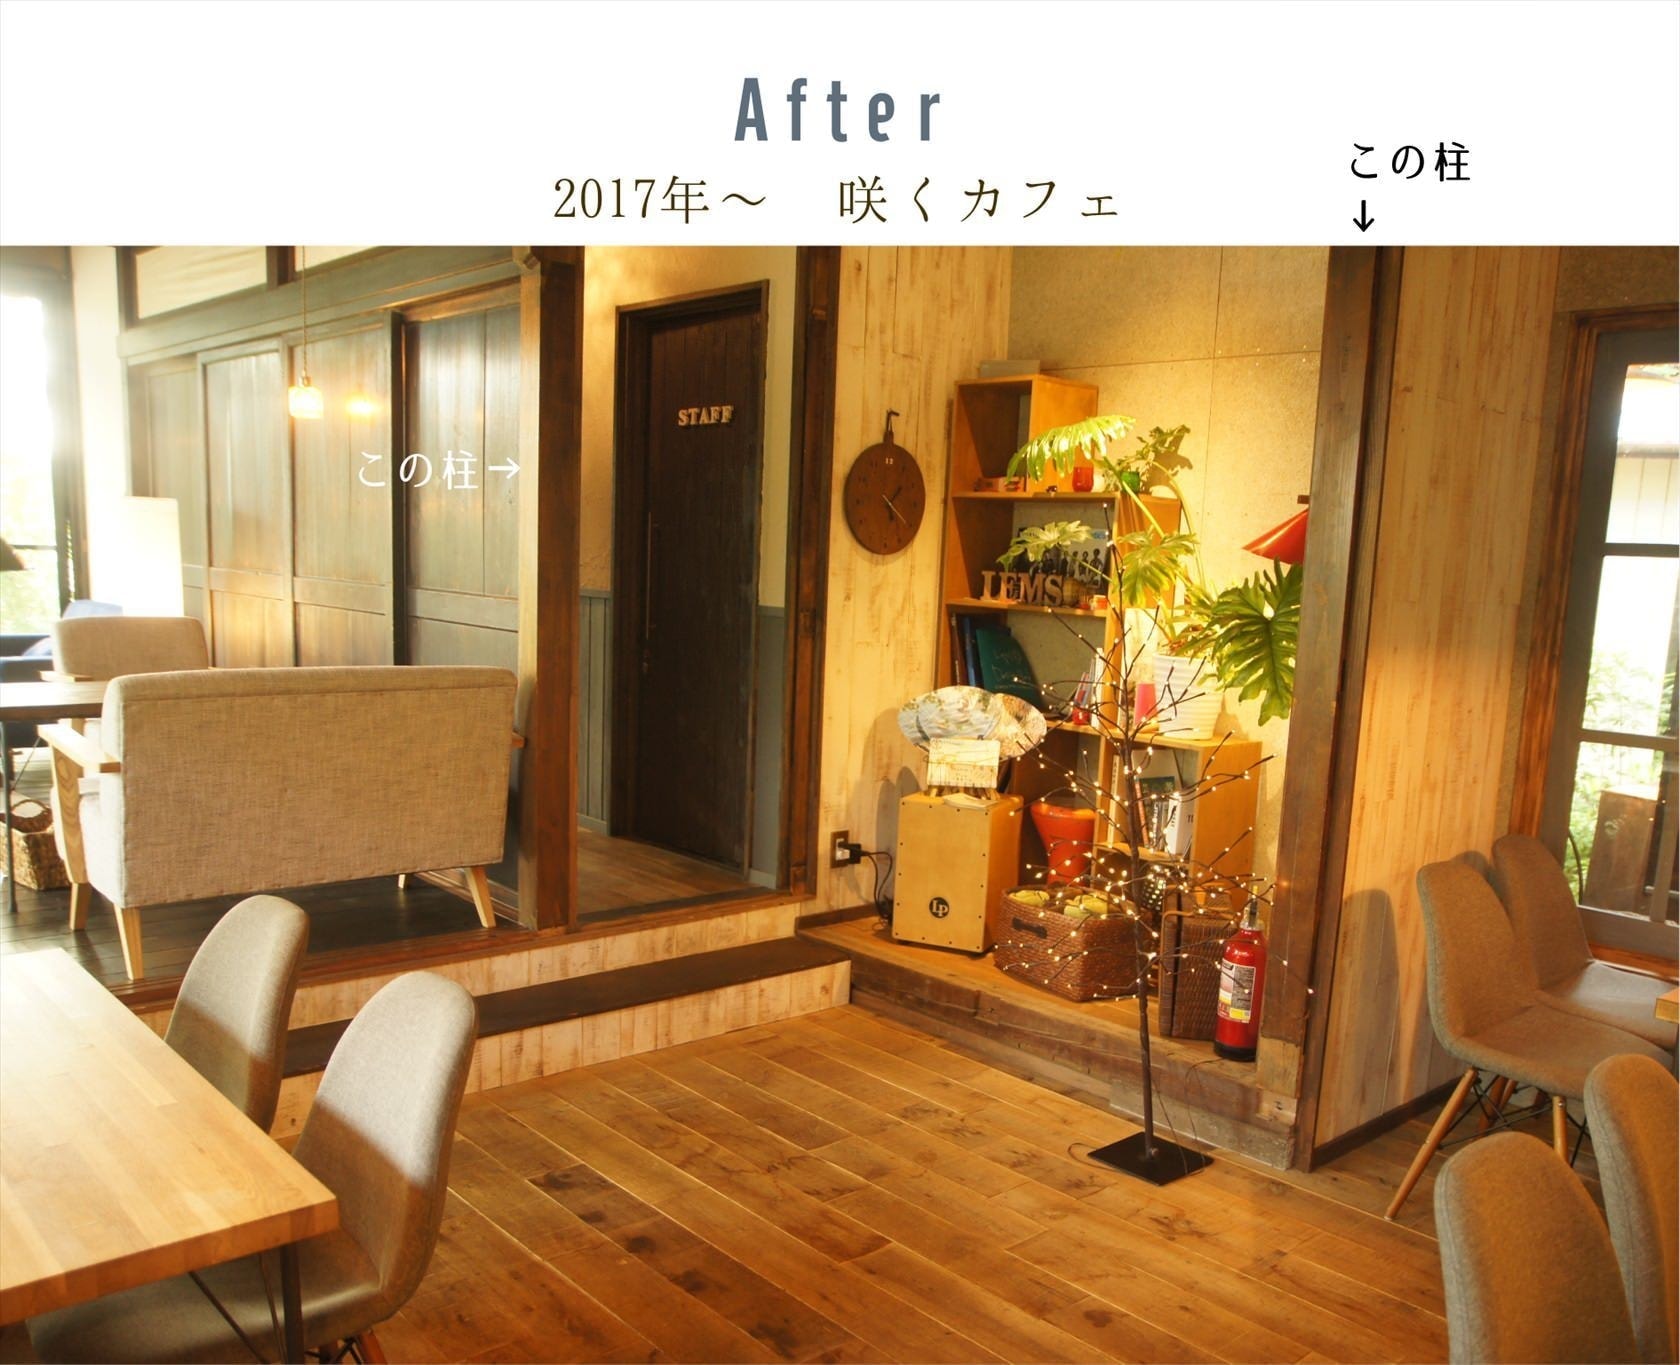 咲くカフェ。茨城・県北、奥久慈大子のカフェ＆ゲストハウス。ランチ、ディナー、コーヒー、宿泊。ビフォーアフター写真リビング北西側アフター。